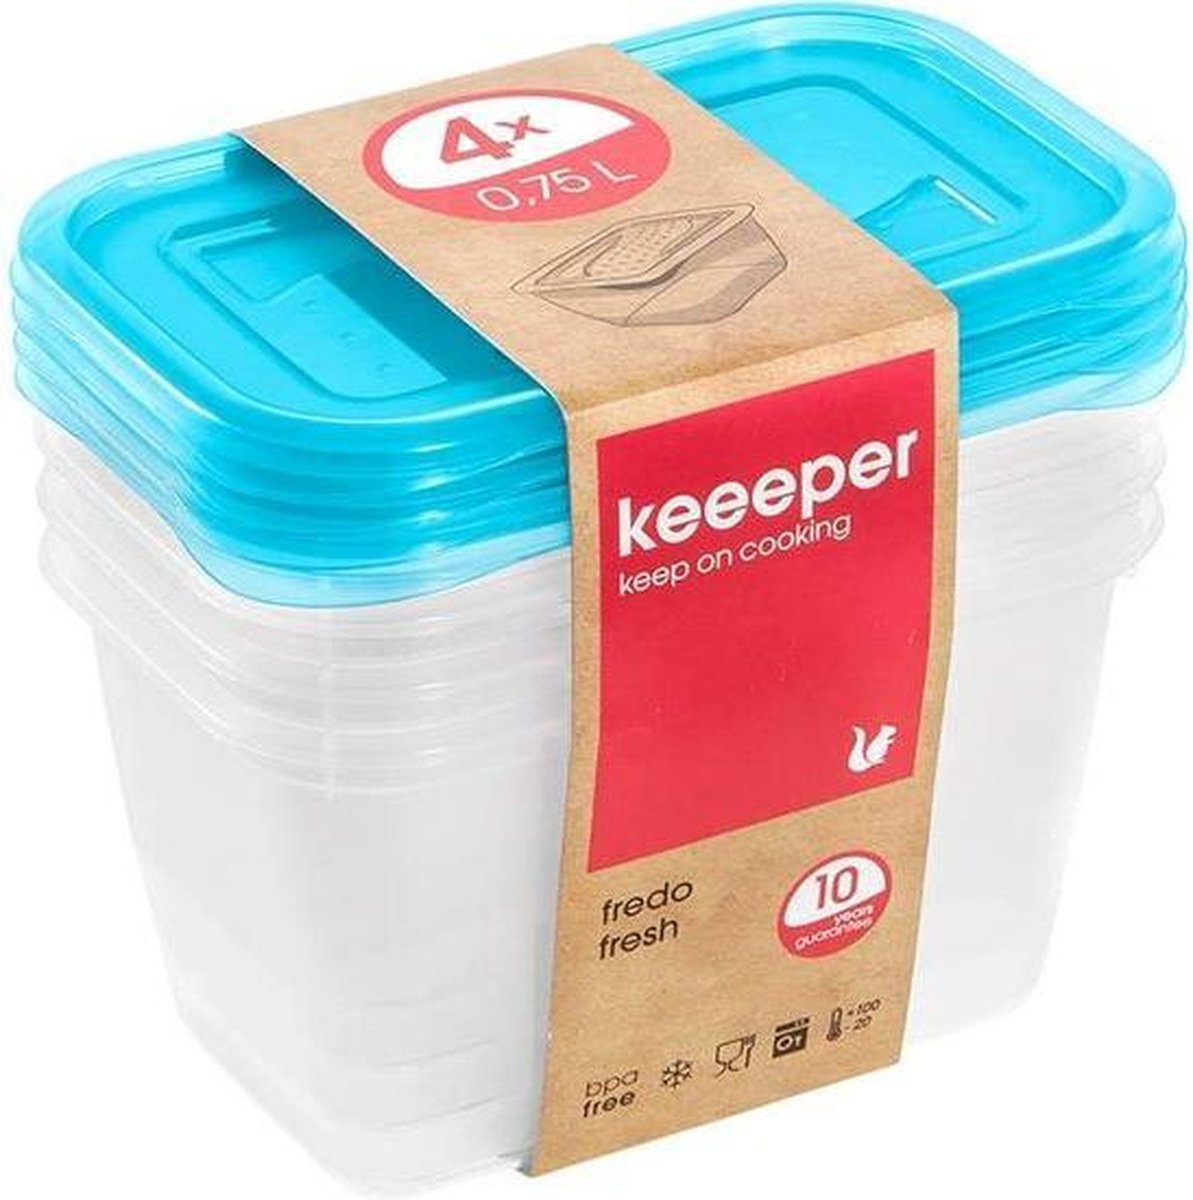 Keeeper Fredo Fresh - Vershouddoos / Vershouddozen - Transparent /blauw - Set van 4st.- 0.75 L